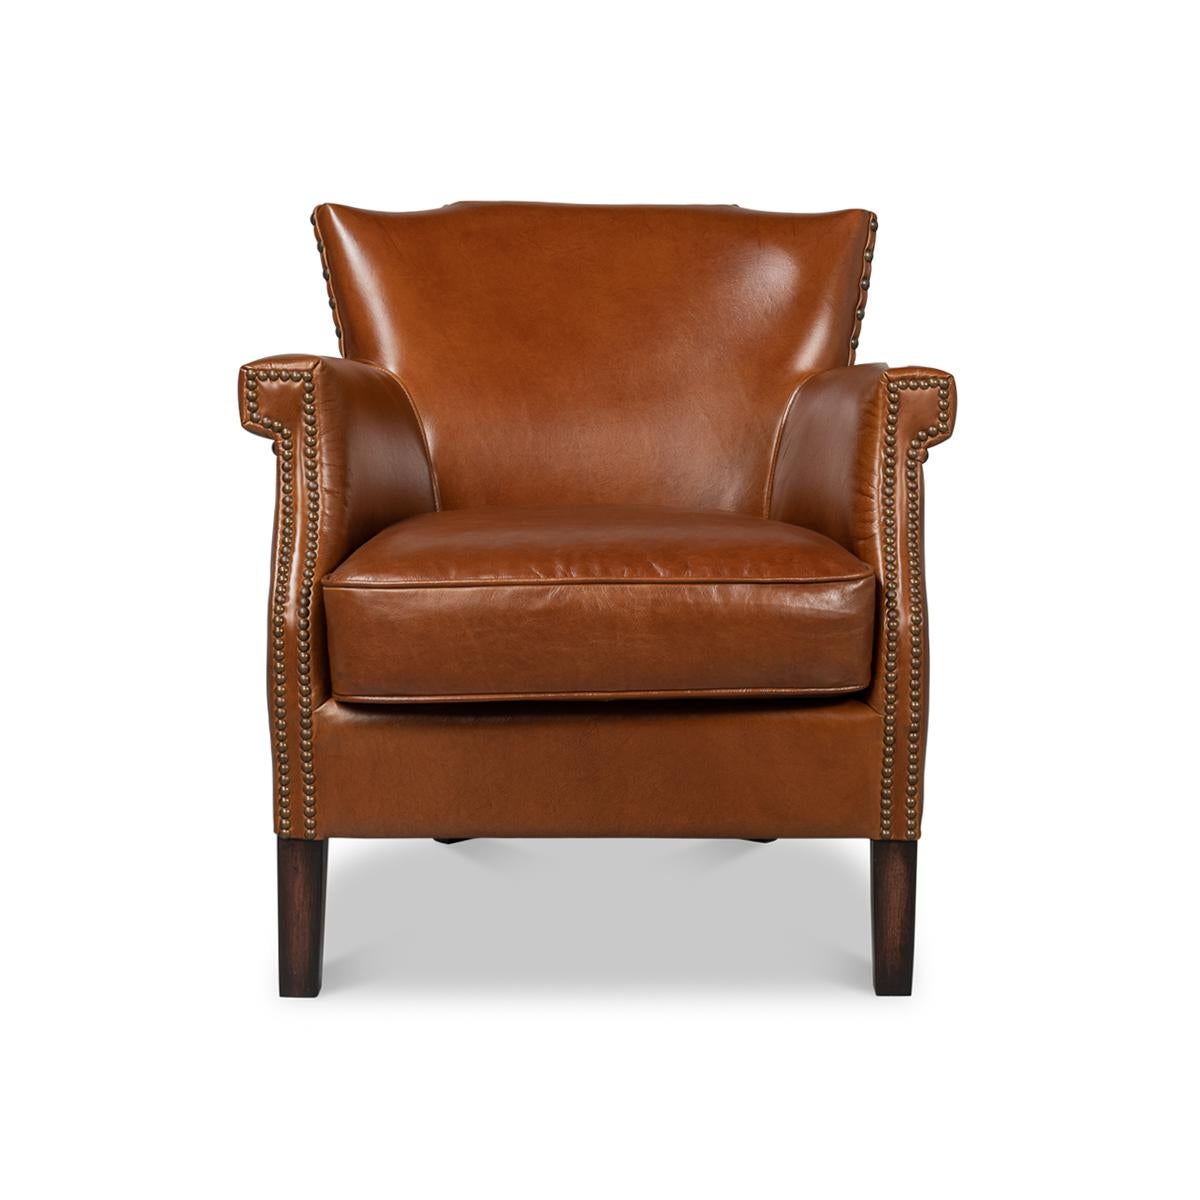 Gepolstert mit havannabraunem Leder im Vintage-Stil. Dieser hübsche Stuhl hat ein paar Ecken und Kanten bekommen, die Ihnen gefallen werden. Die Rückenlehne möchte fast ein Flügel sein, ist aber stattdessen leicht angewinkelt. Schlanke Armlehnen,